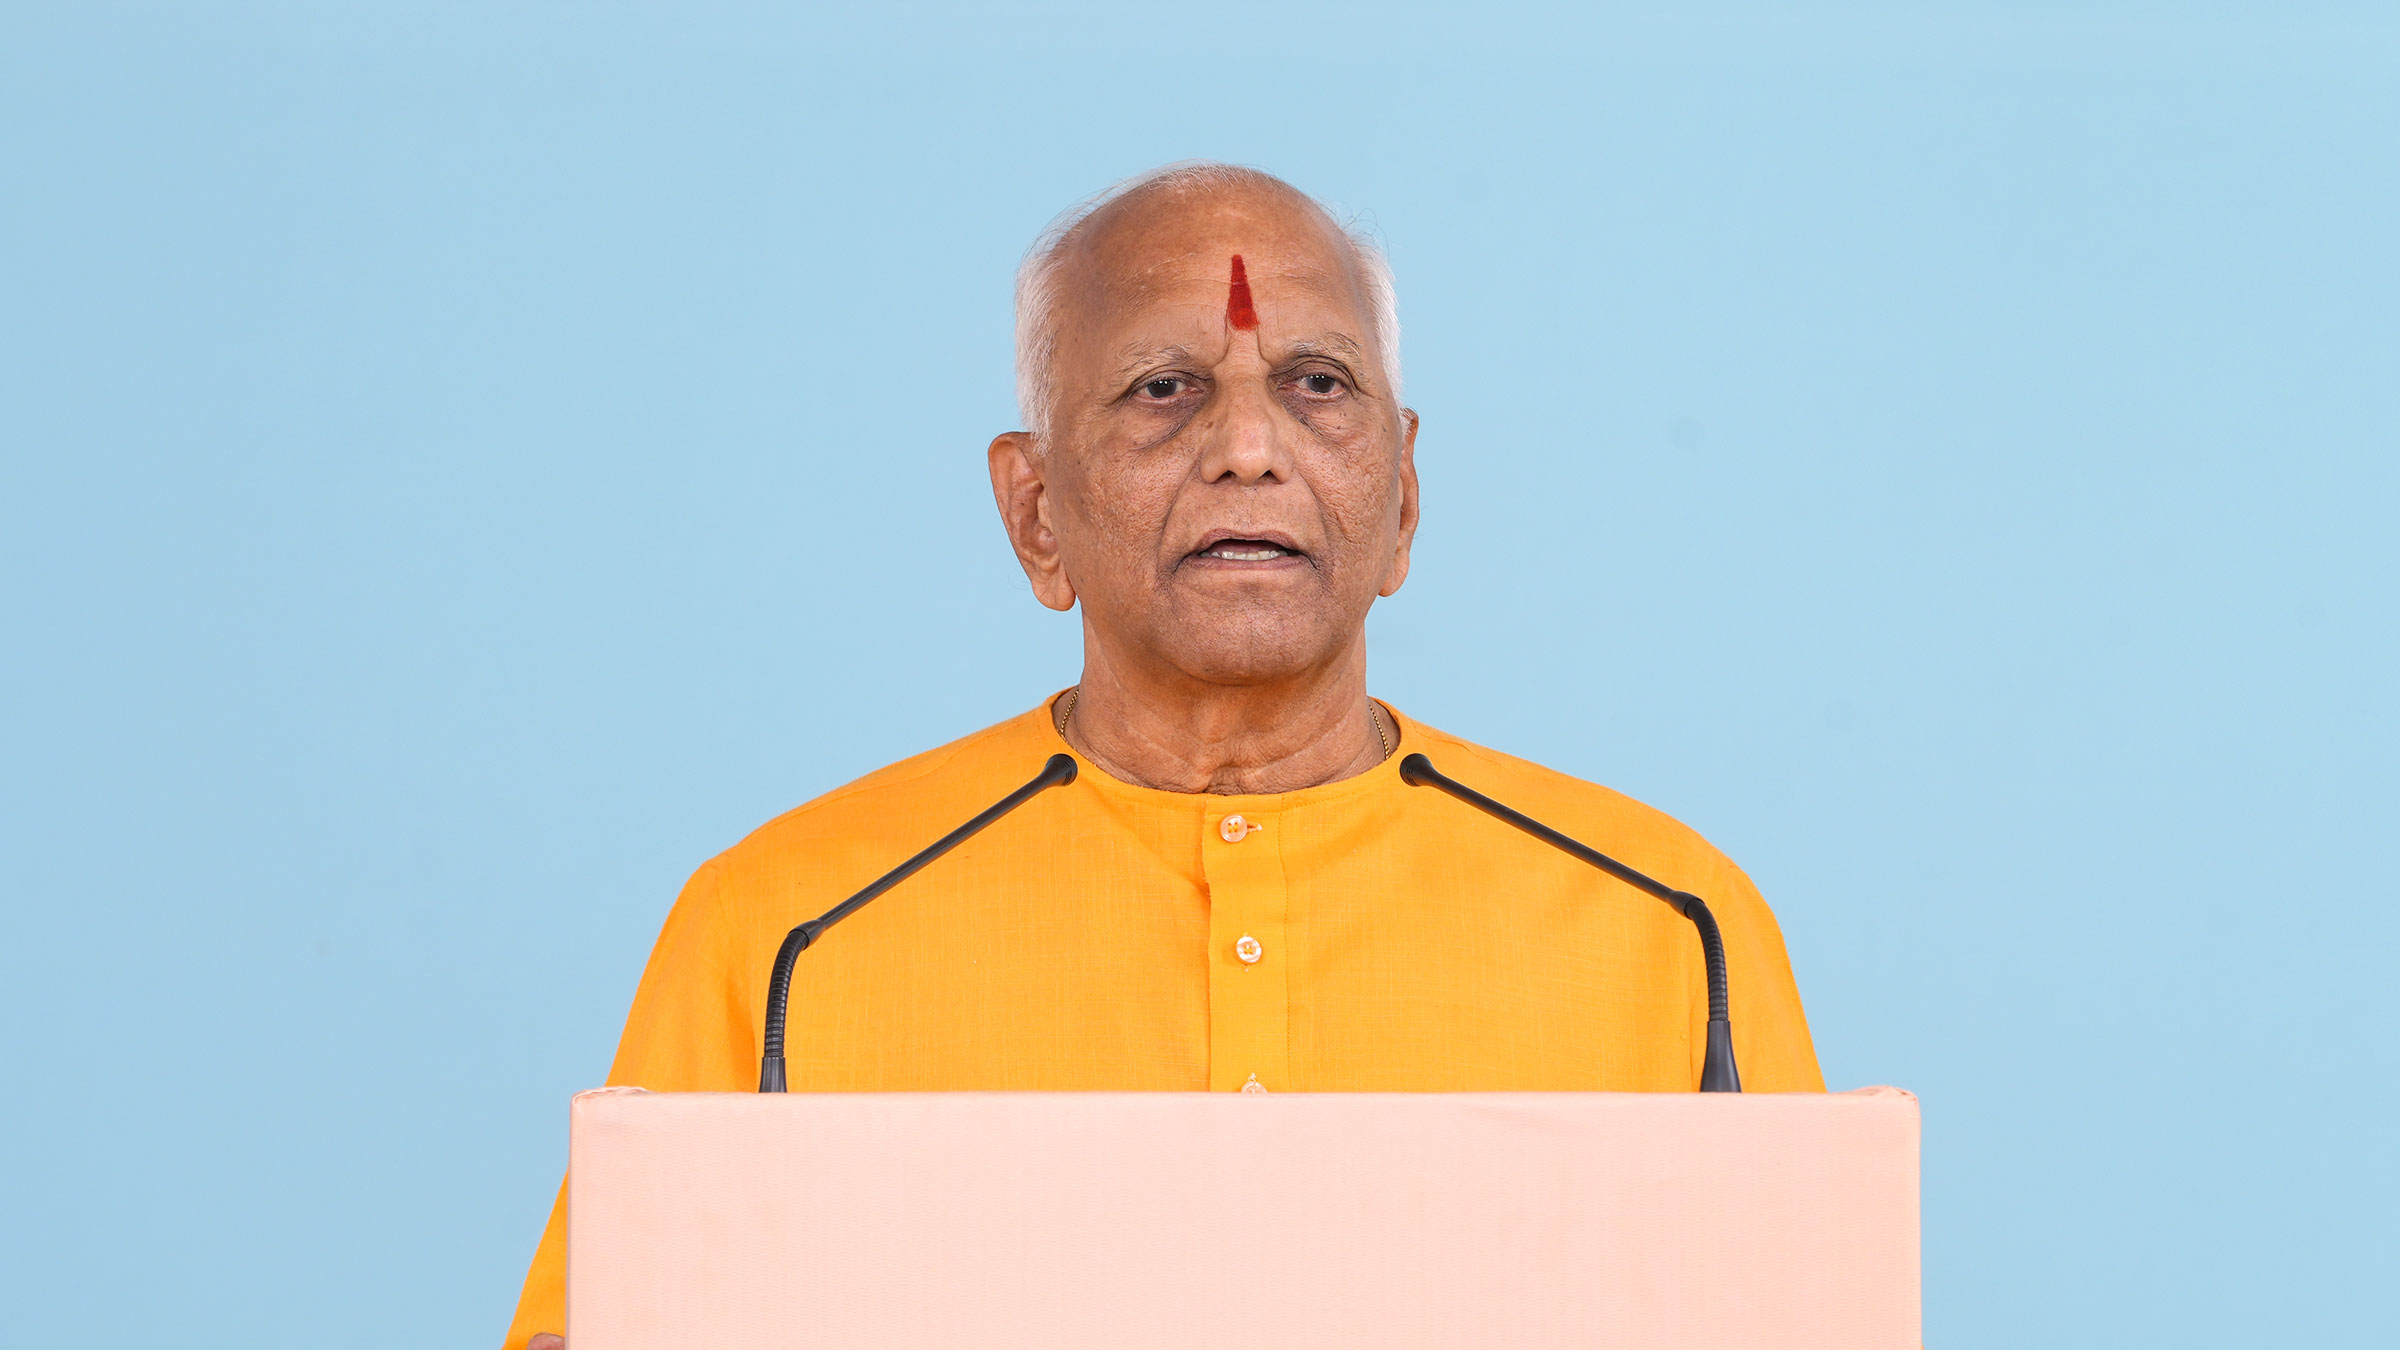 Sadguru Nandkumar Jadhav (Dharmapracharak Saint, Sanatan Sanstha, Maharashtra), explaining the importance of performing spiritual practice for establishing the ‘Hindu Rashtra’